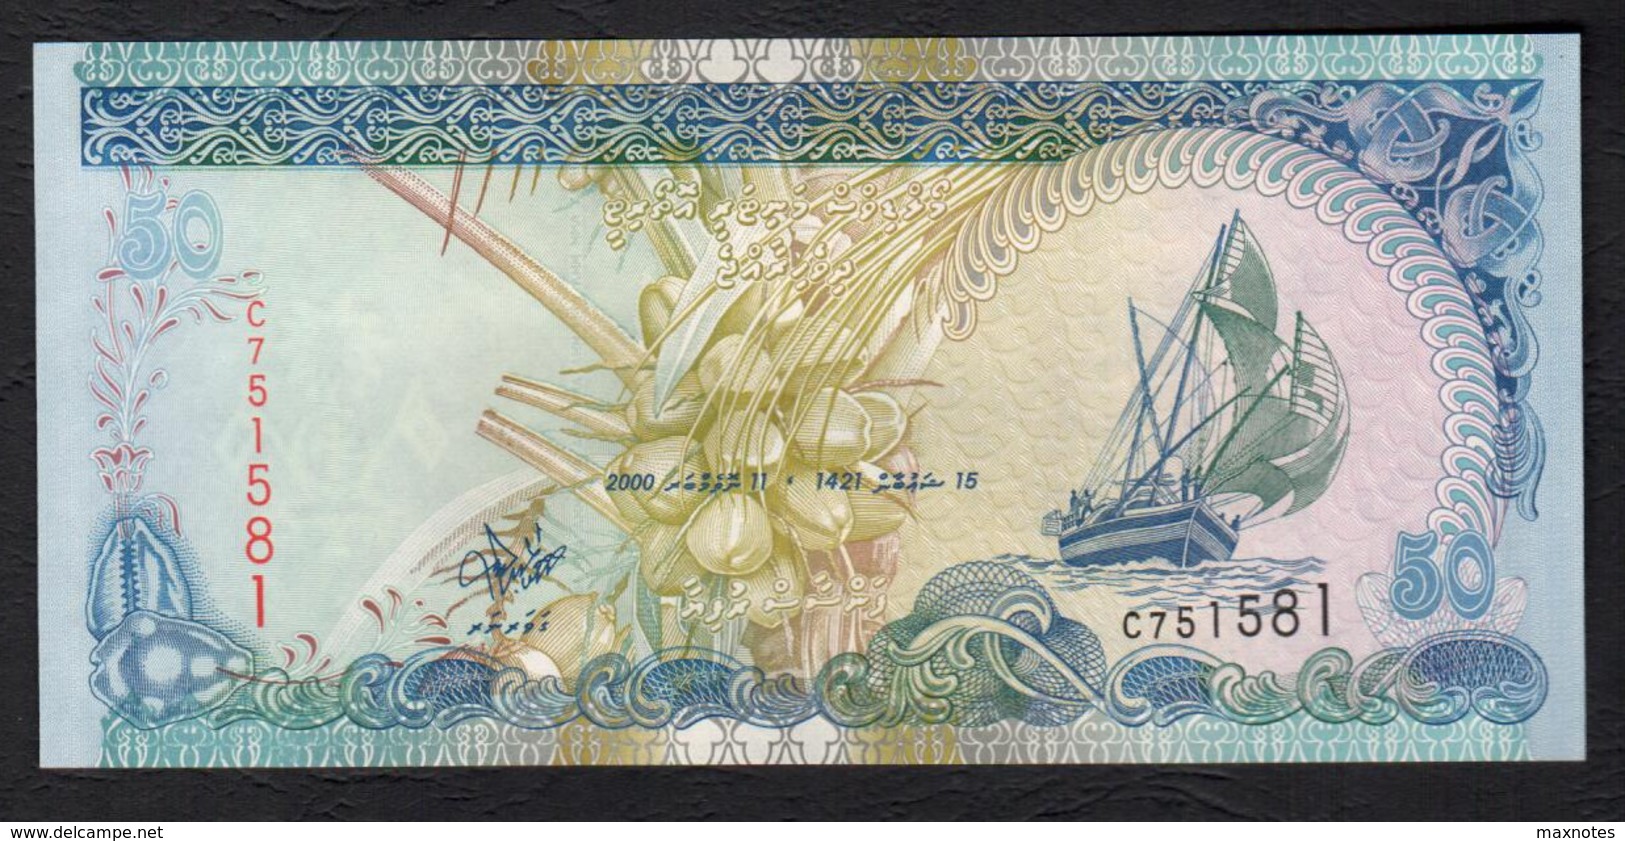 MALDIVE : Banconota 50 Rufiaa - 2000 - FDS - Maldive